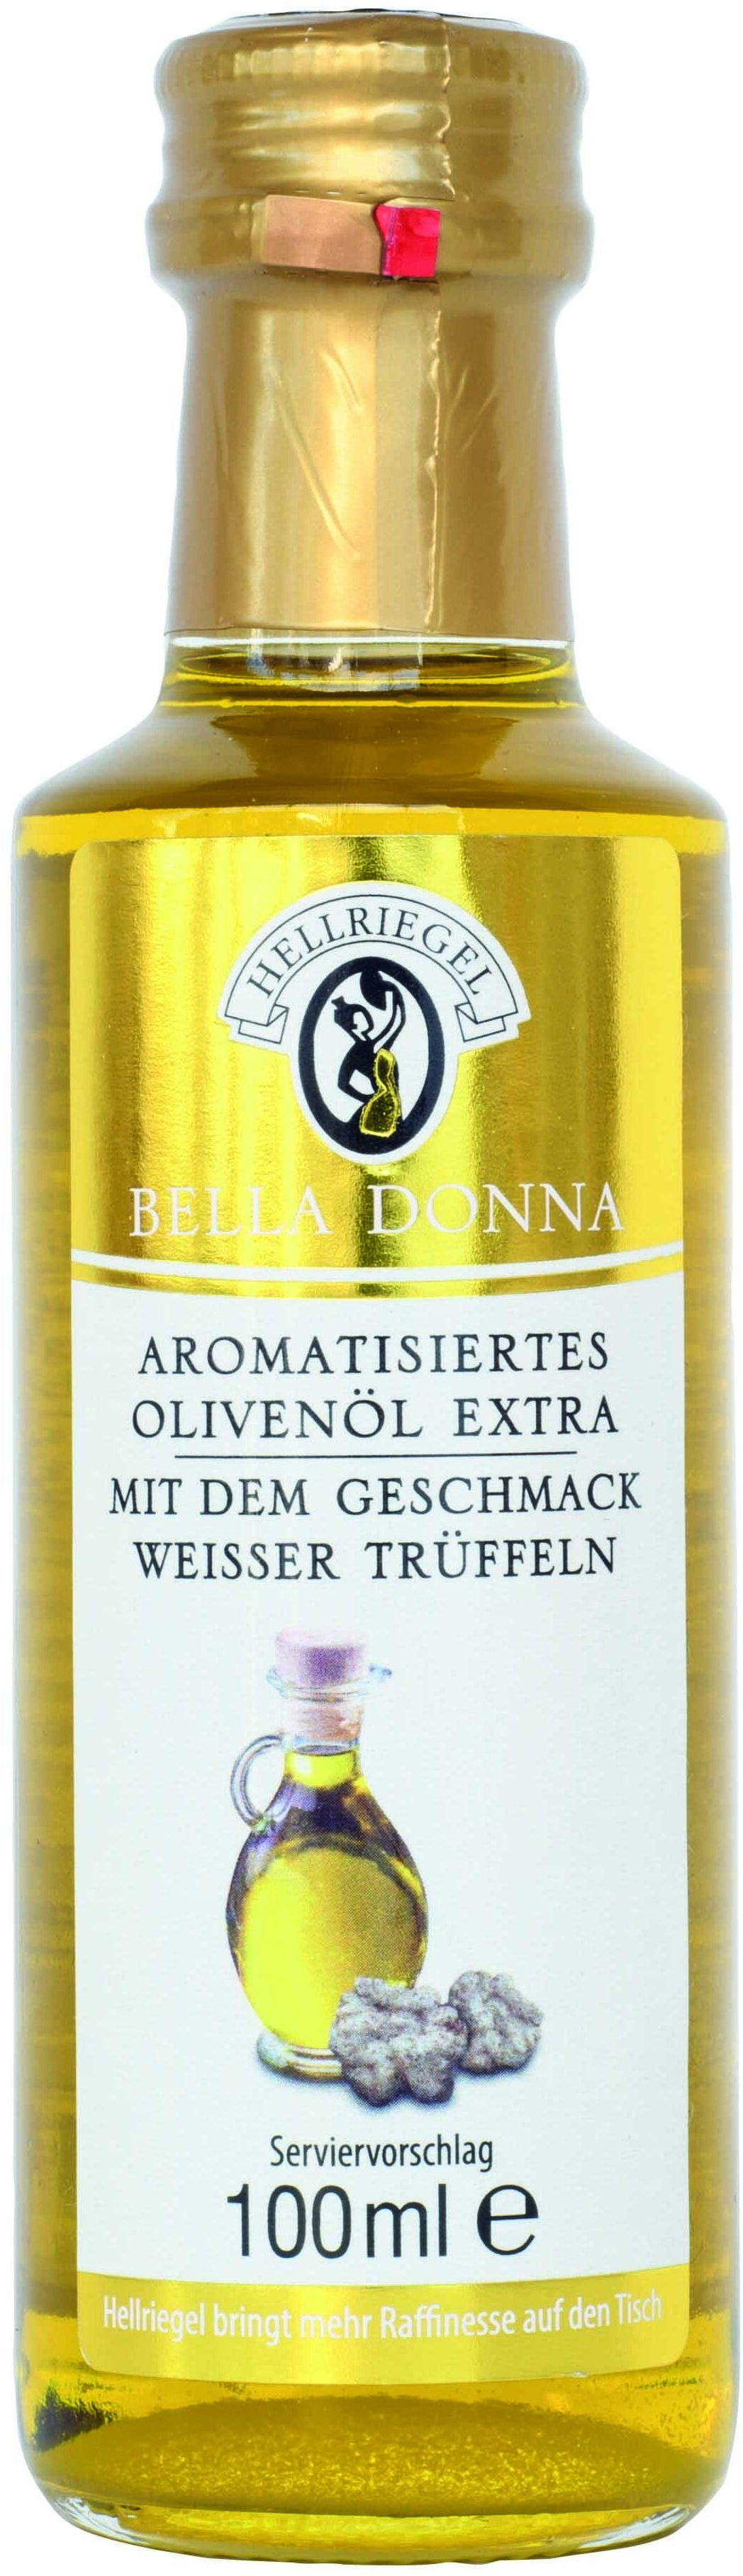 Hellriegel Bella Donna Aromatisiertes Olivenöl extra mit dem Geschmack weißer Trüffel - Produkt